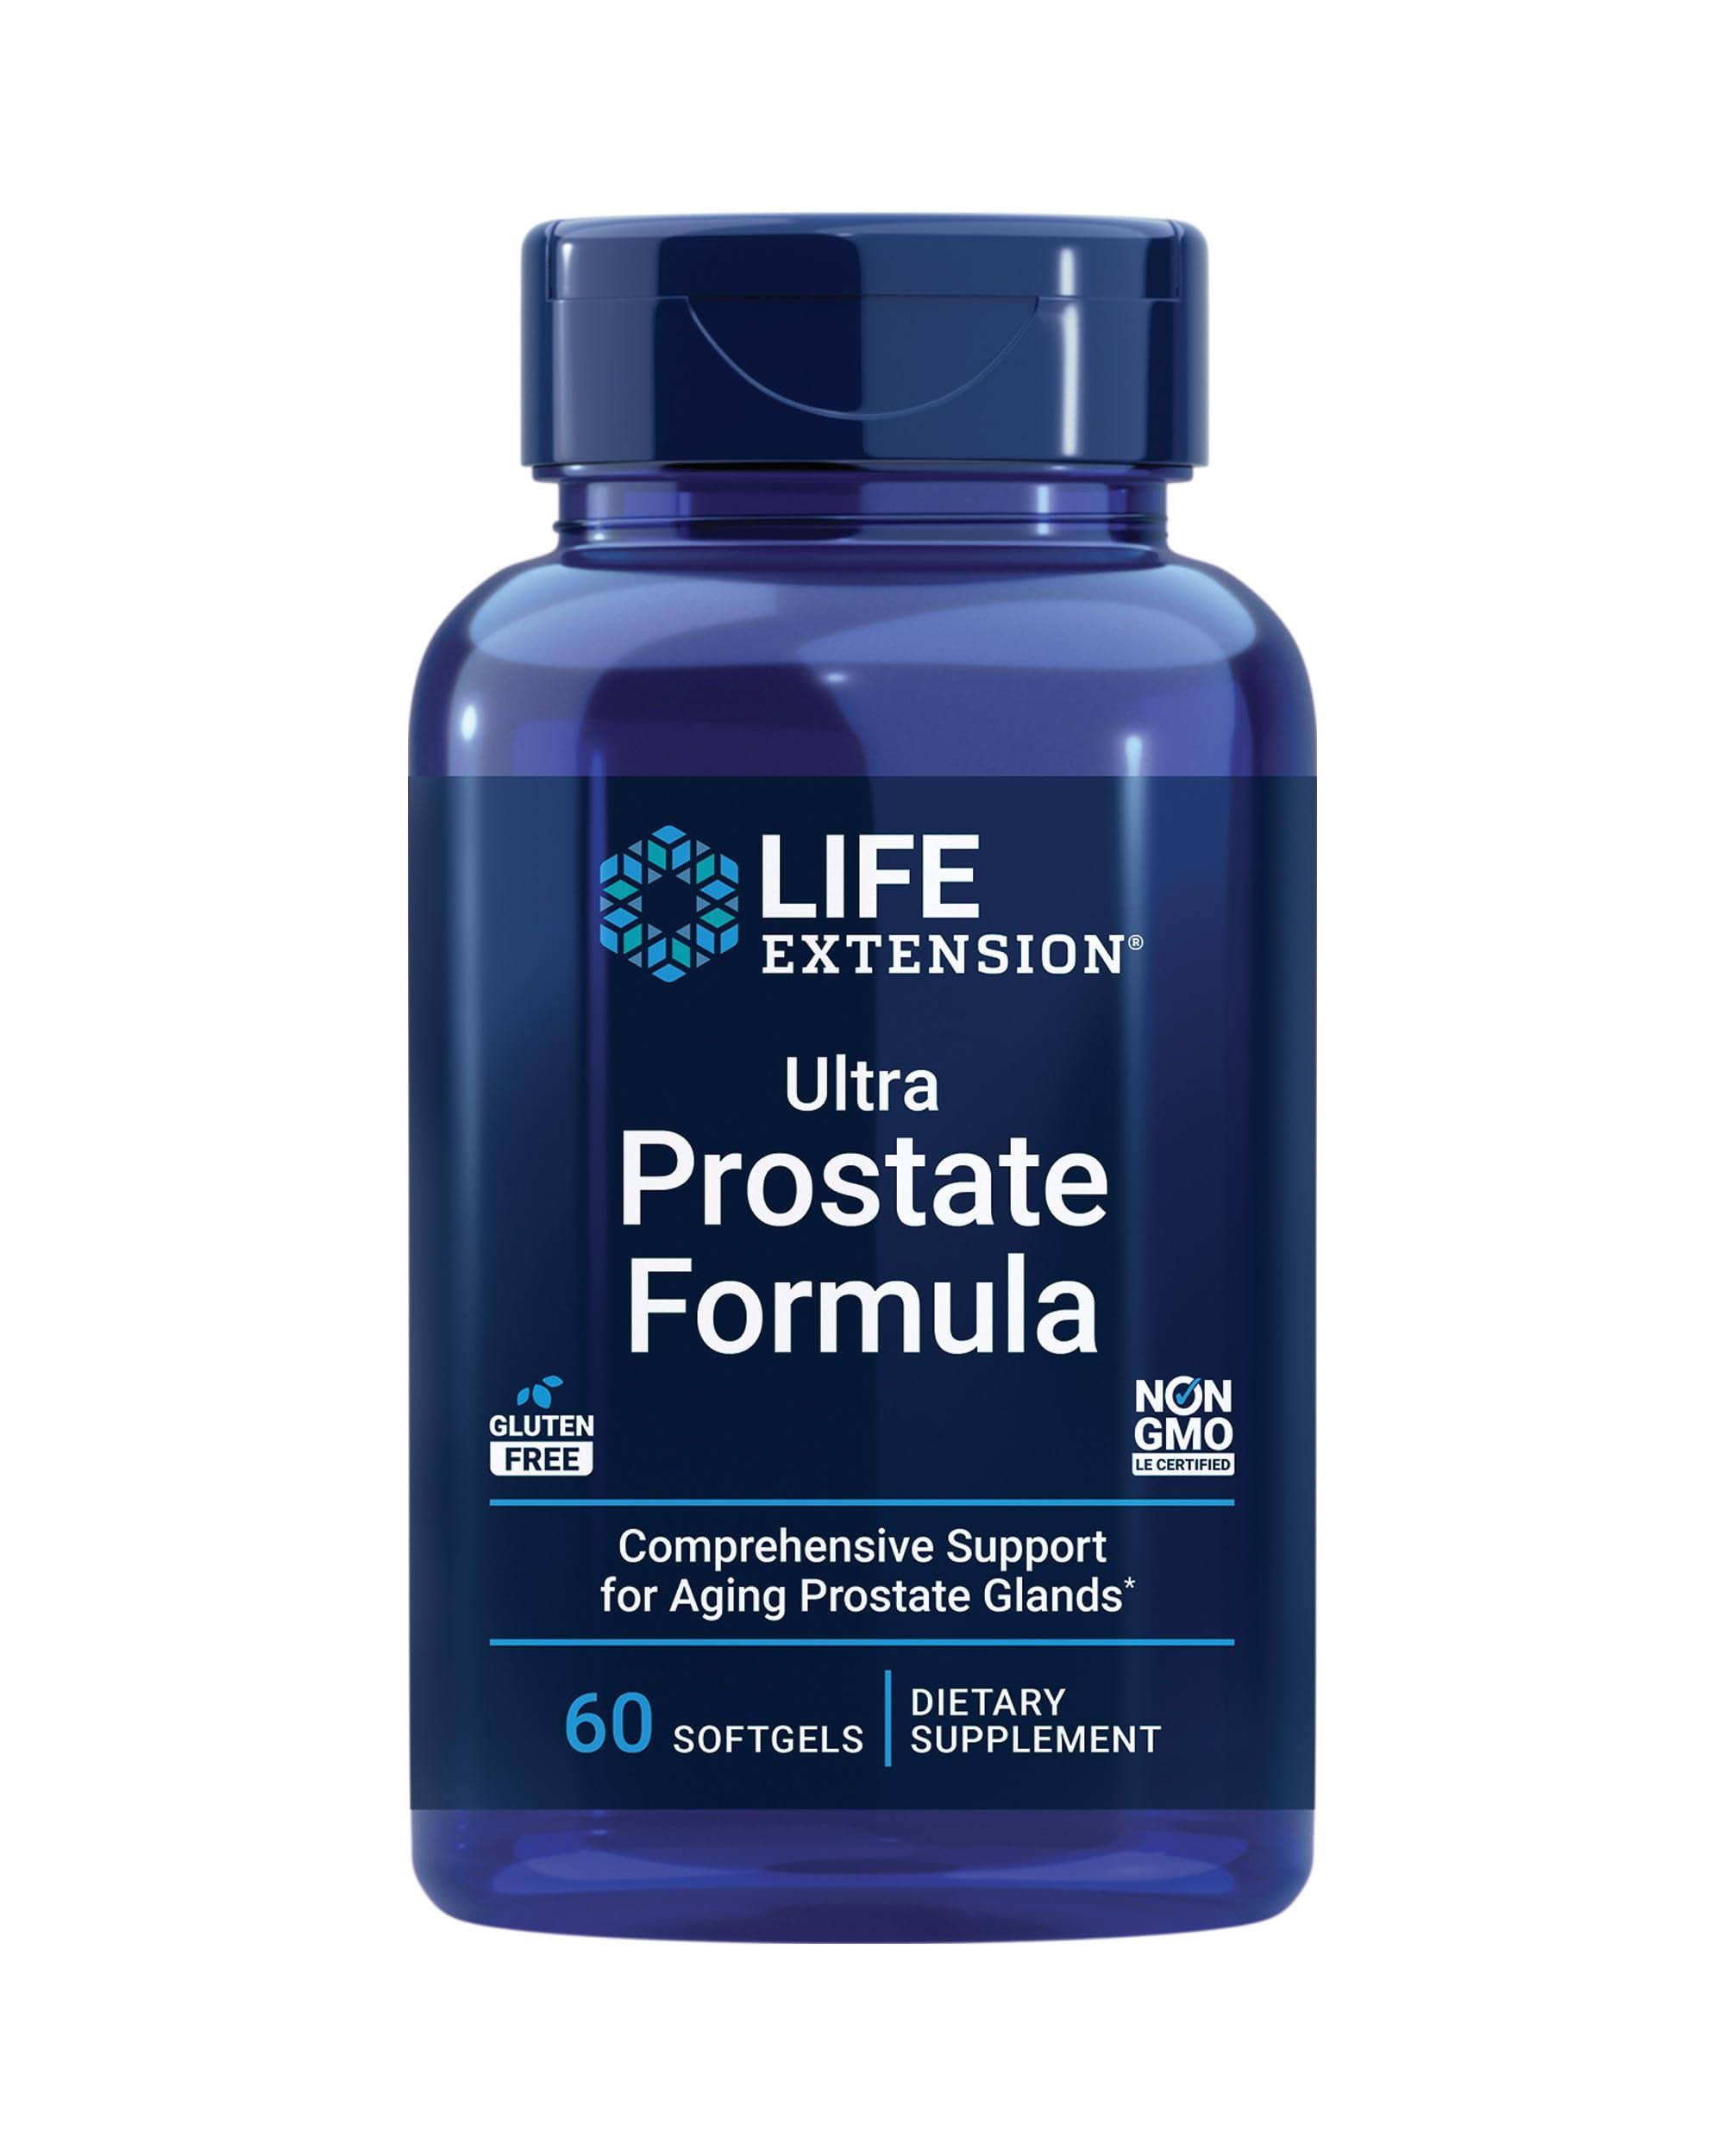 Life Extension Prostate Formula, Ultra, Softgels - 60 softgels